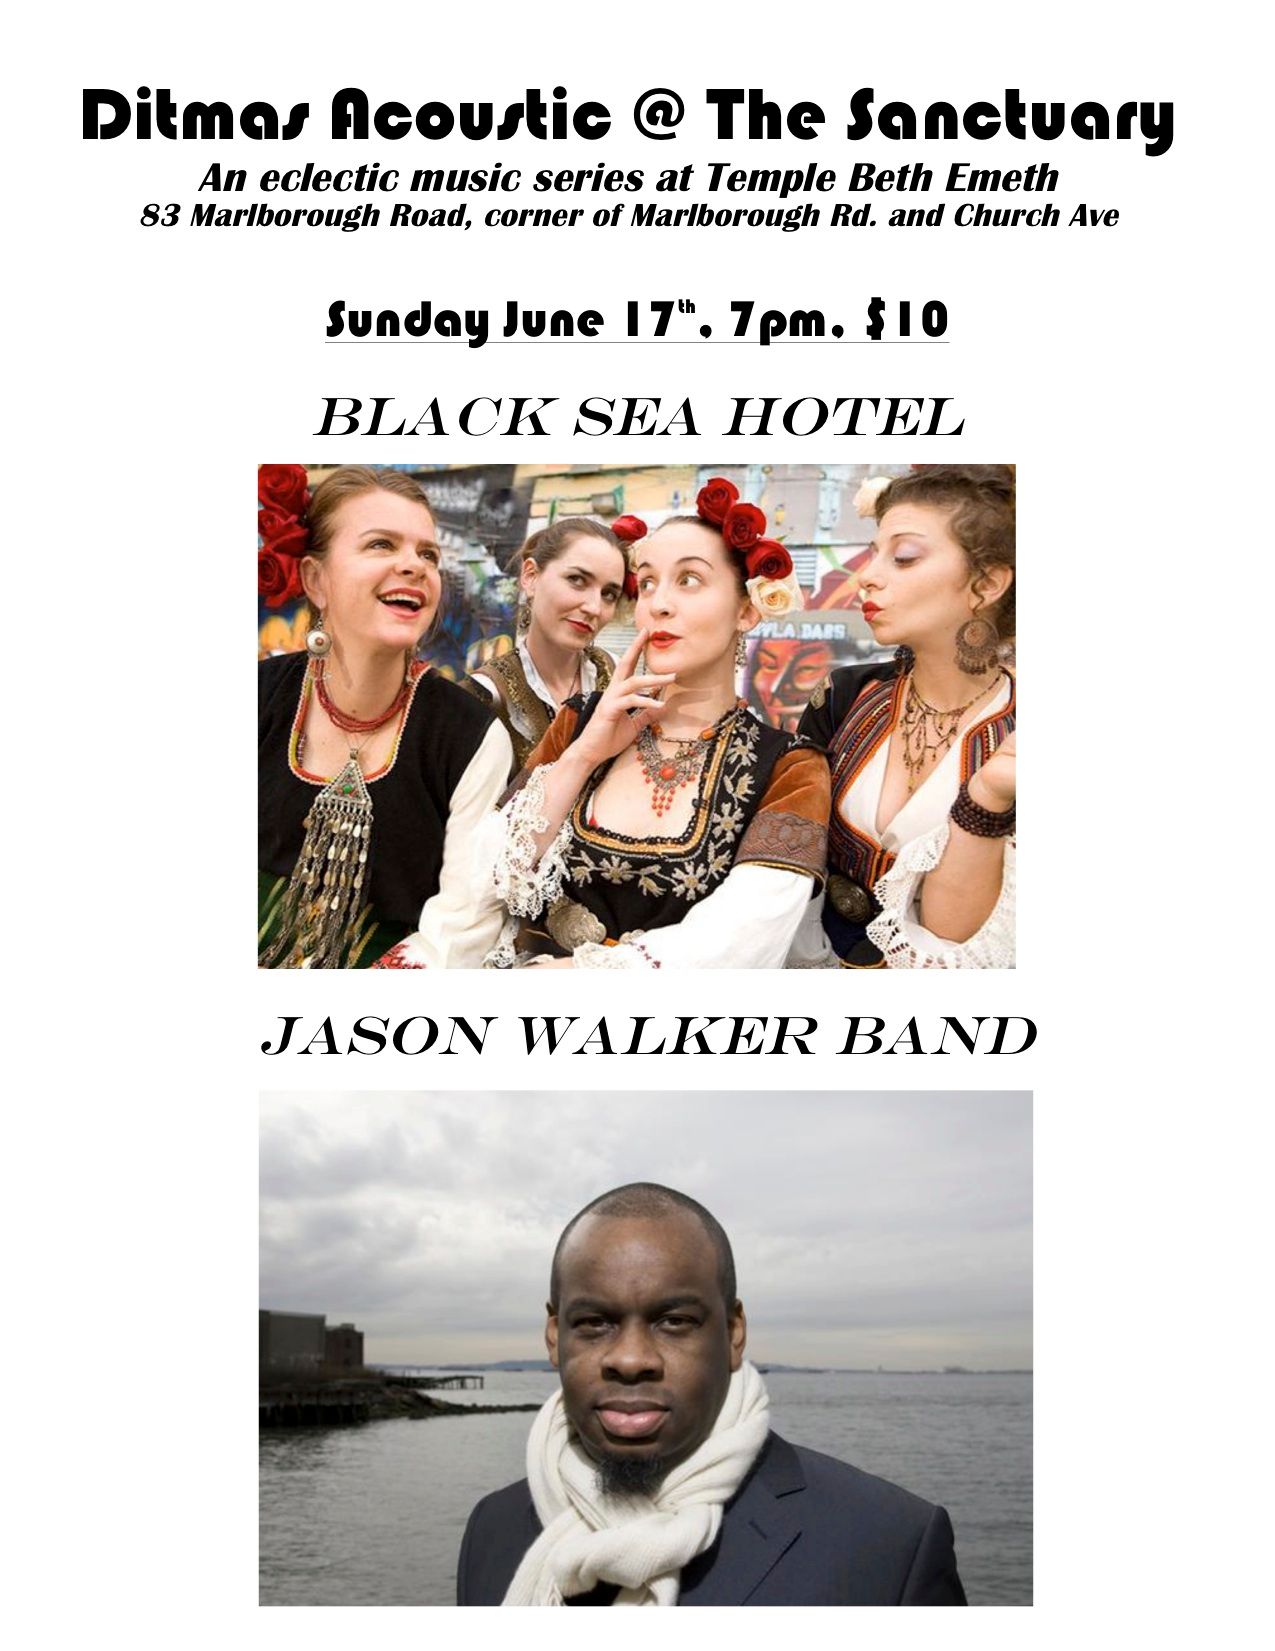 Black Sea Hotel & Jason Walker Band Play Ditmas Acoustic This Sunday